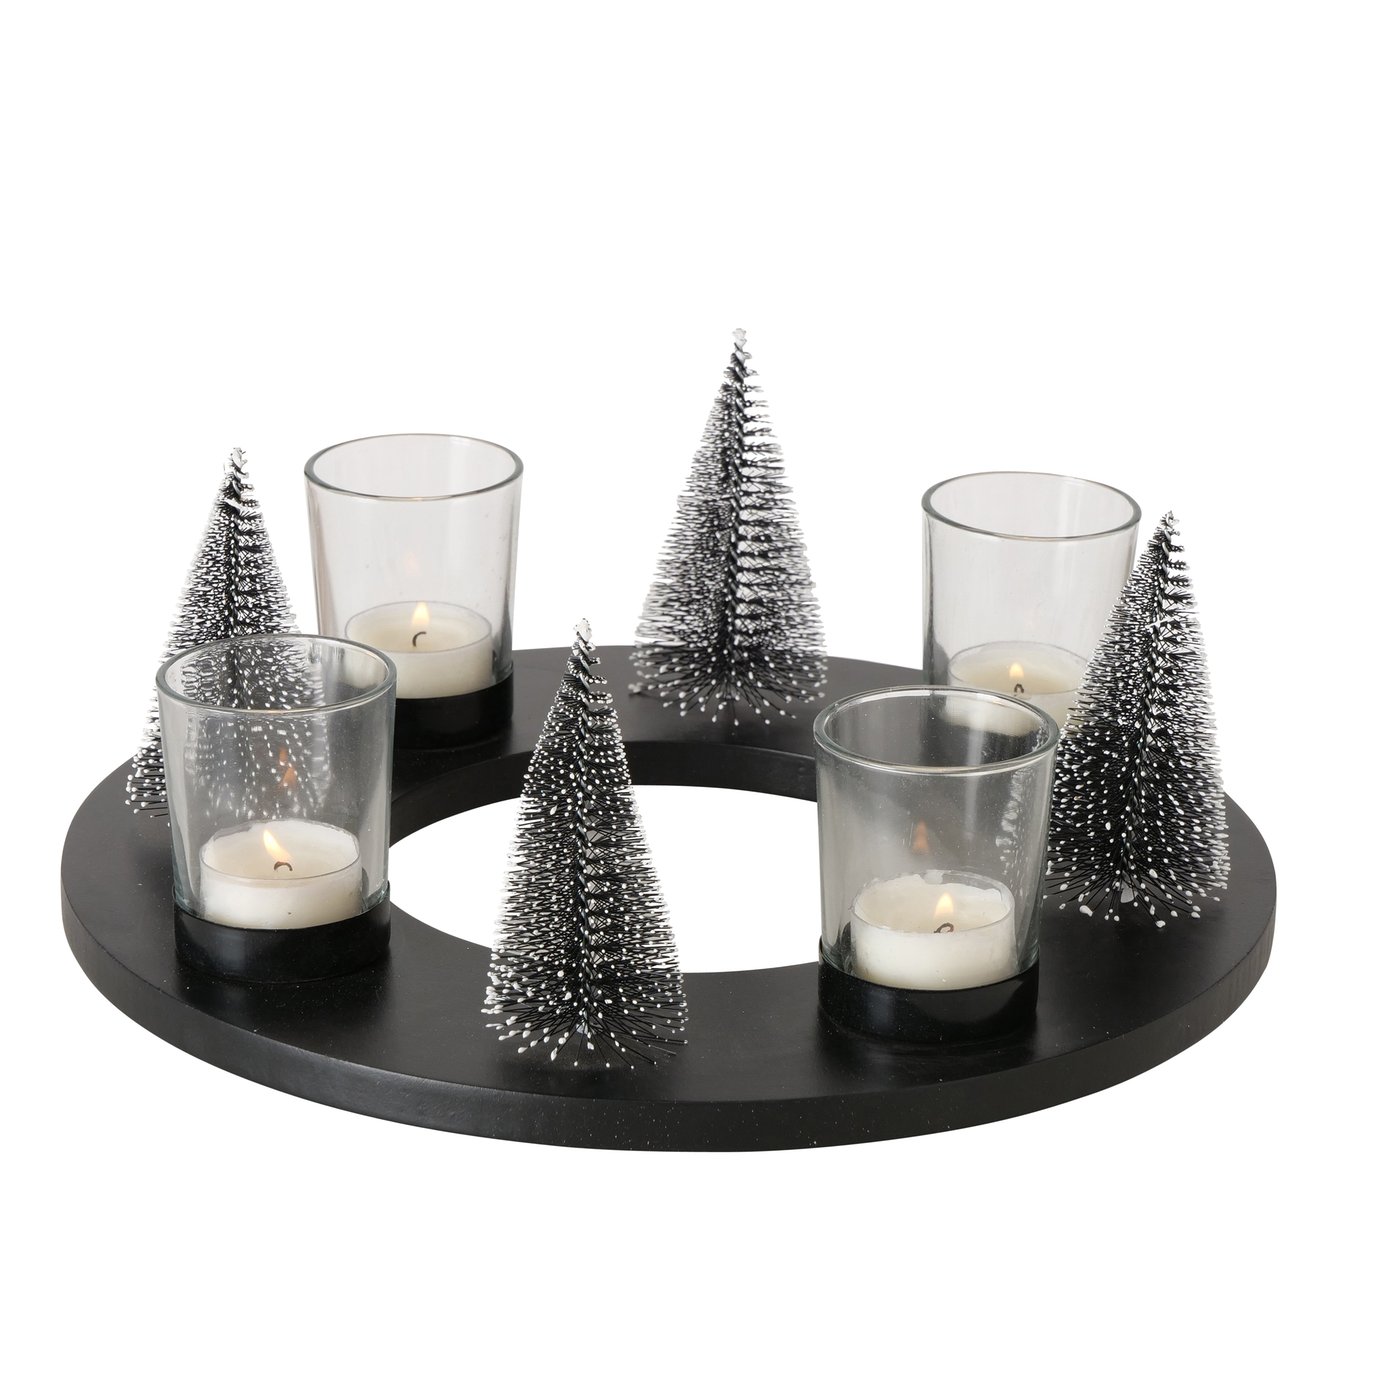 Teelichthalter Adventskranz rund schwarz D30cm, 2024270, 4066076061129, Boltze Weihnachtsdekoration online kaufen bei Malou